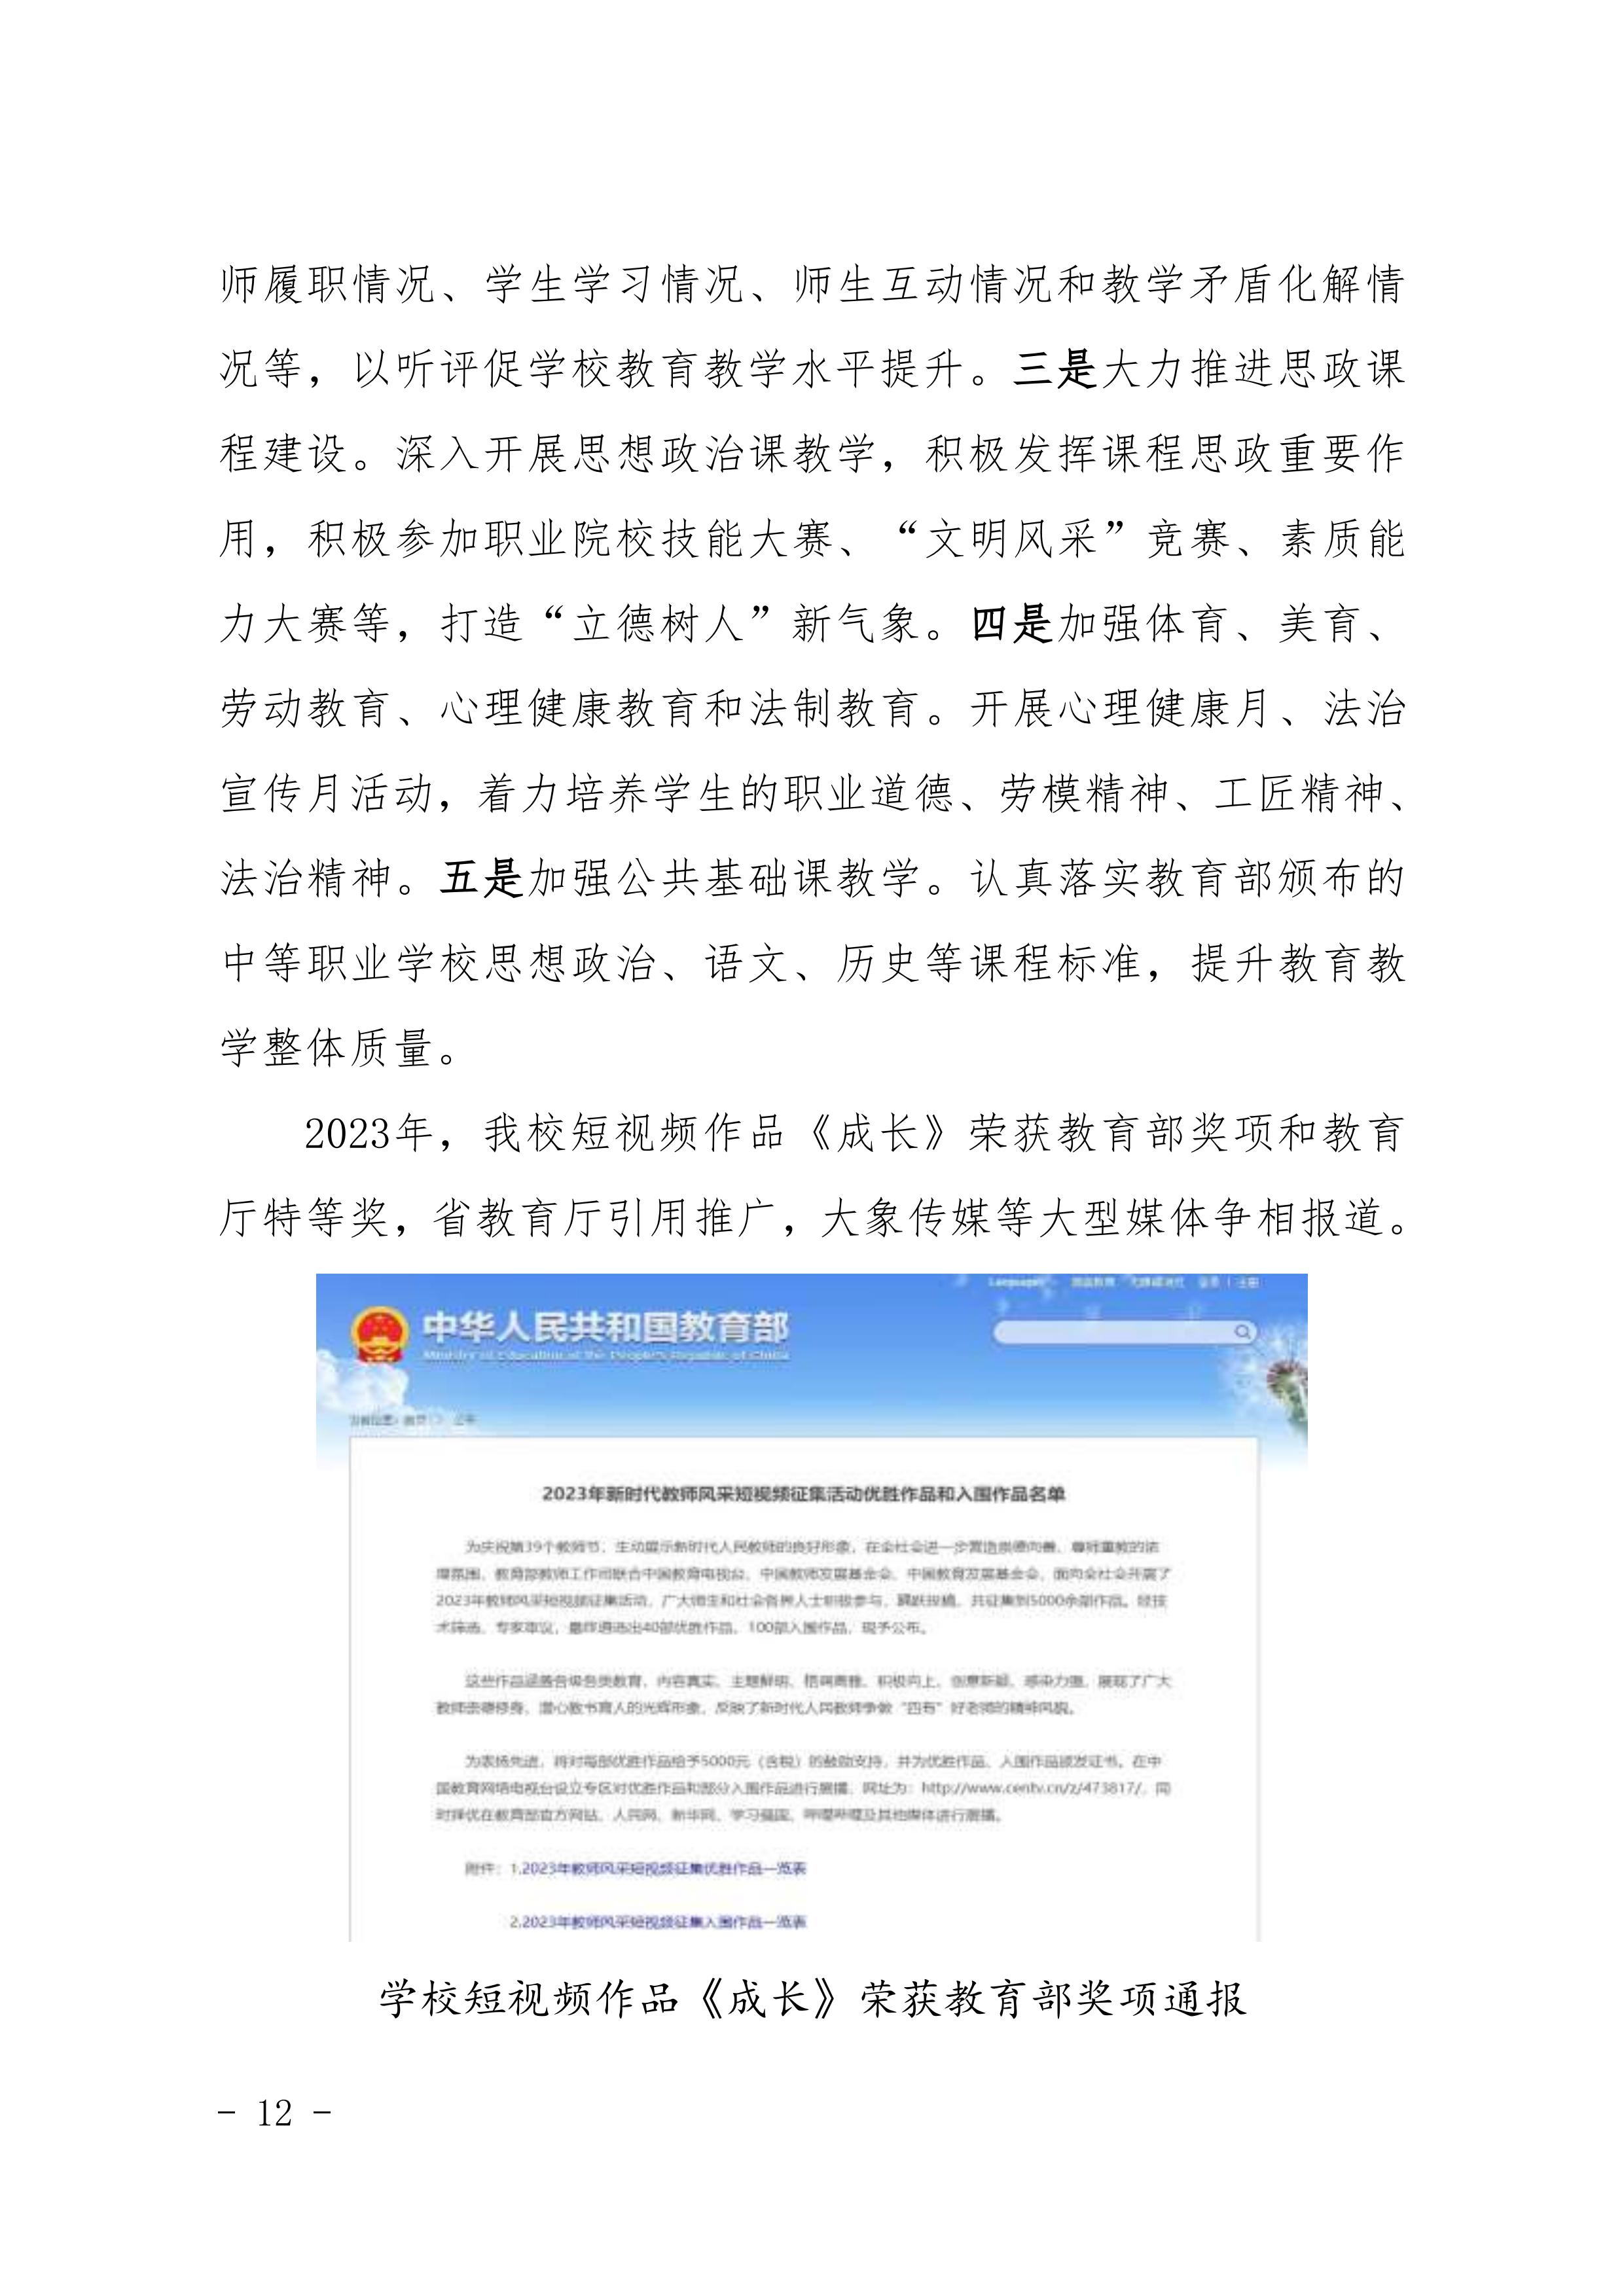 河南省民政学校职业教育质量报告（2023年度）发布版_15.jpg